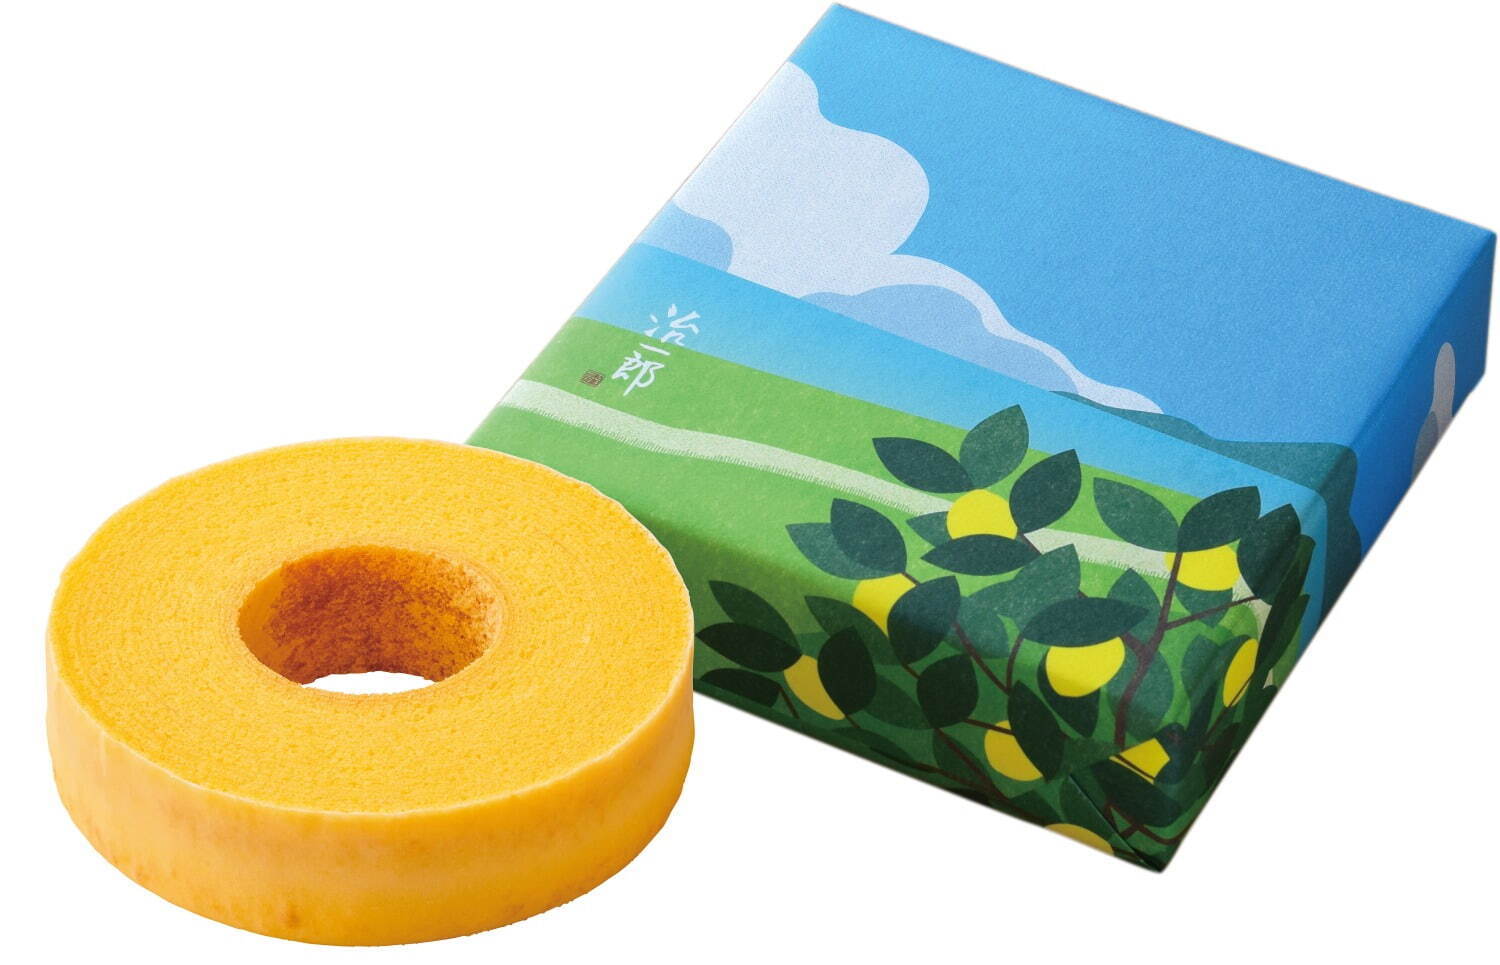 「檸檬(れもん)のバウムクーヘン」1,780円